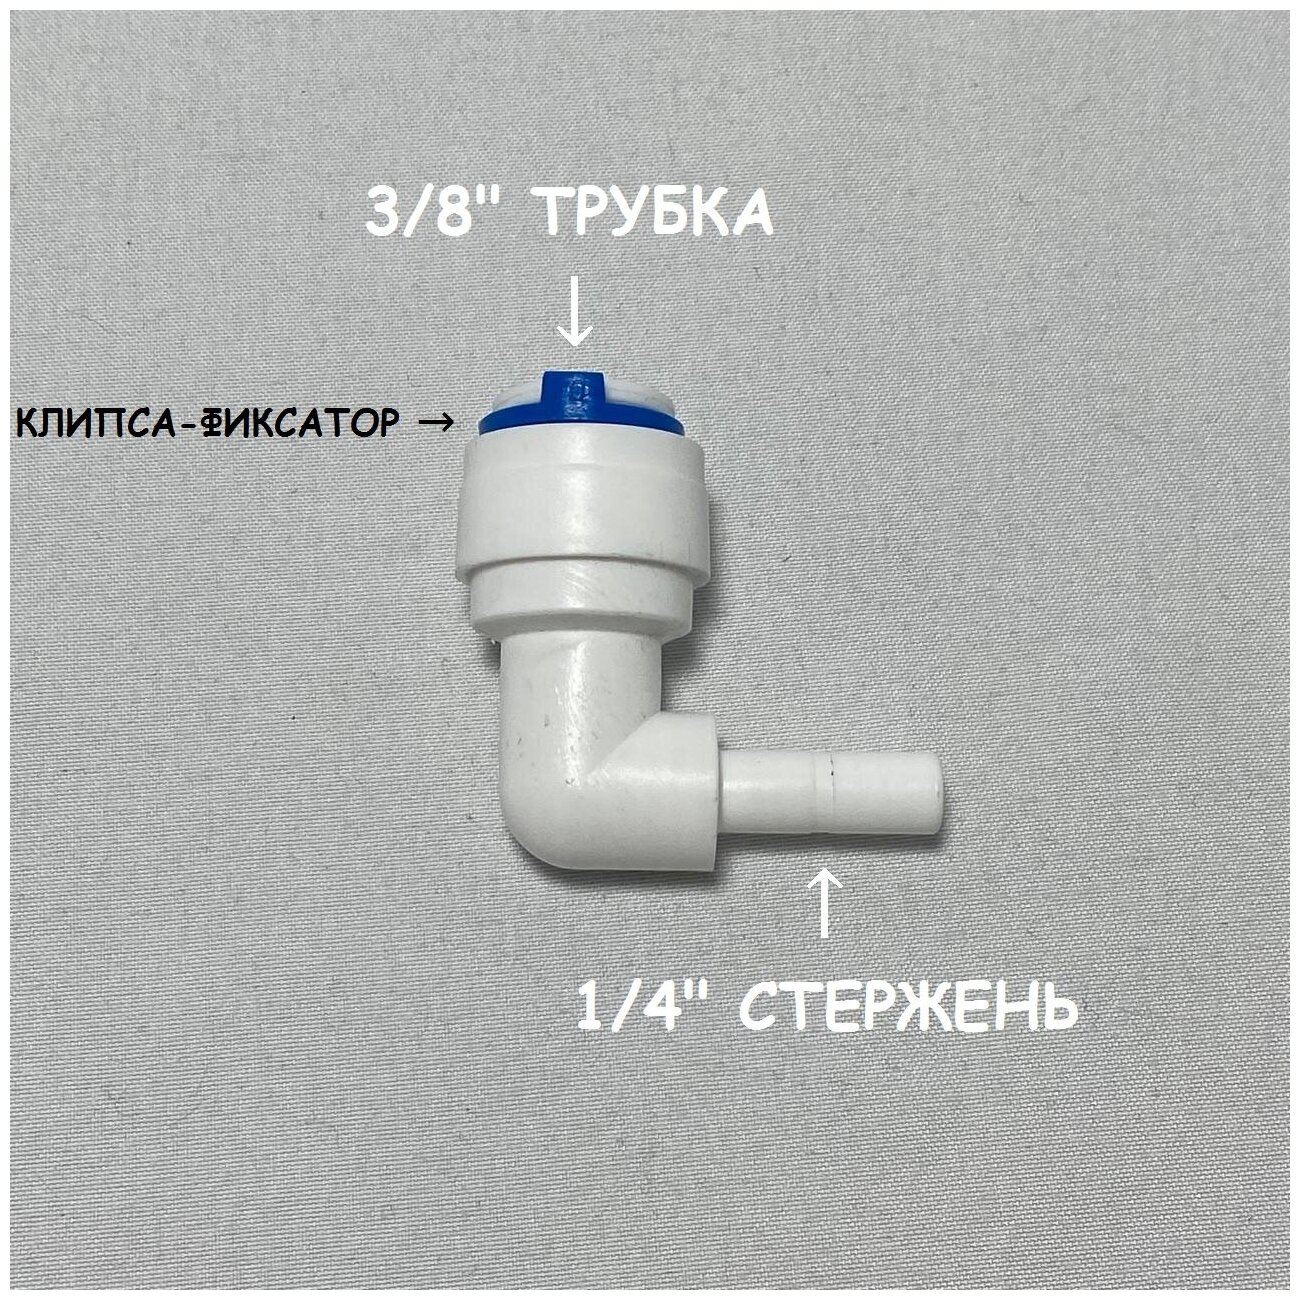 Фитинг угловой для фильтра UFAFILTER (3/8" трубка - 1/4" стержень) из пищевого пластика